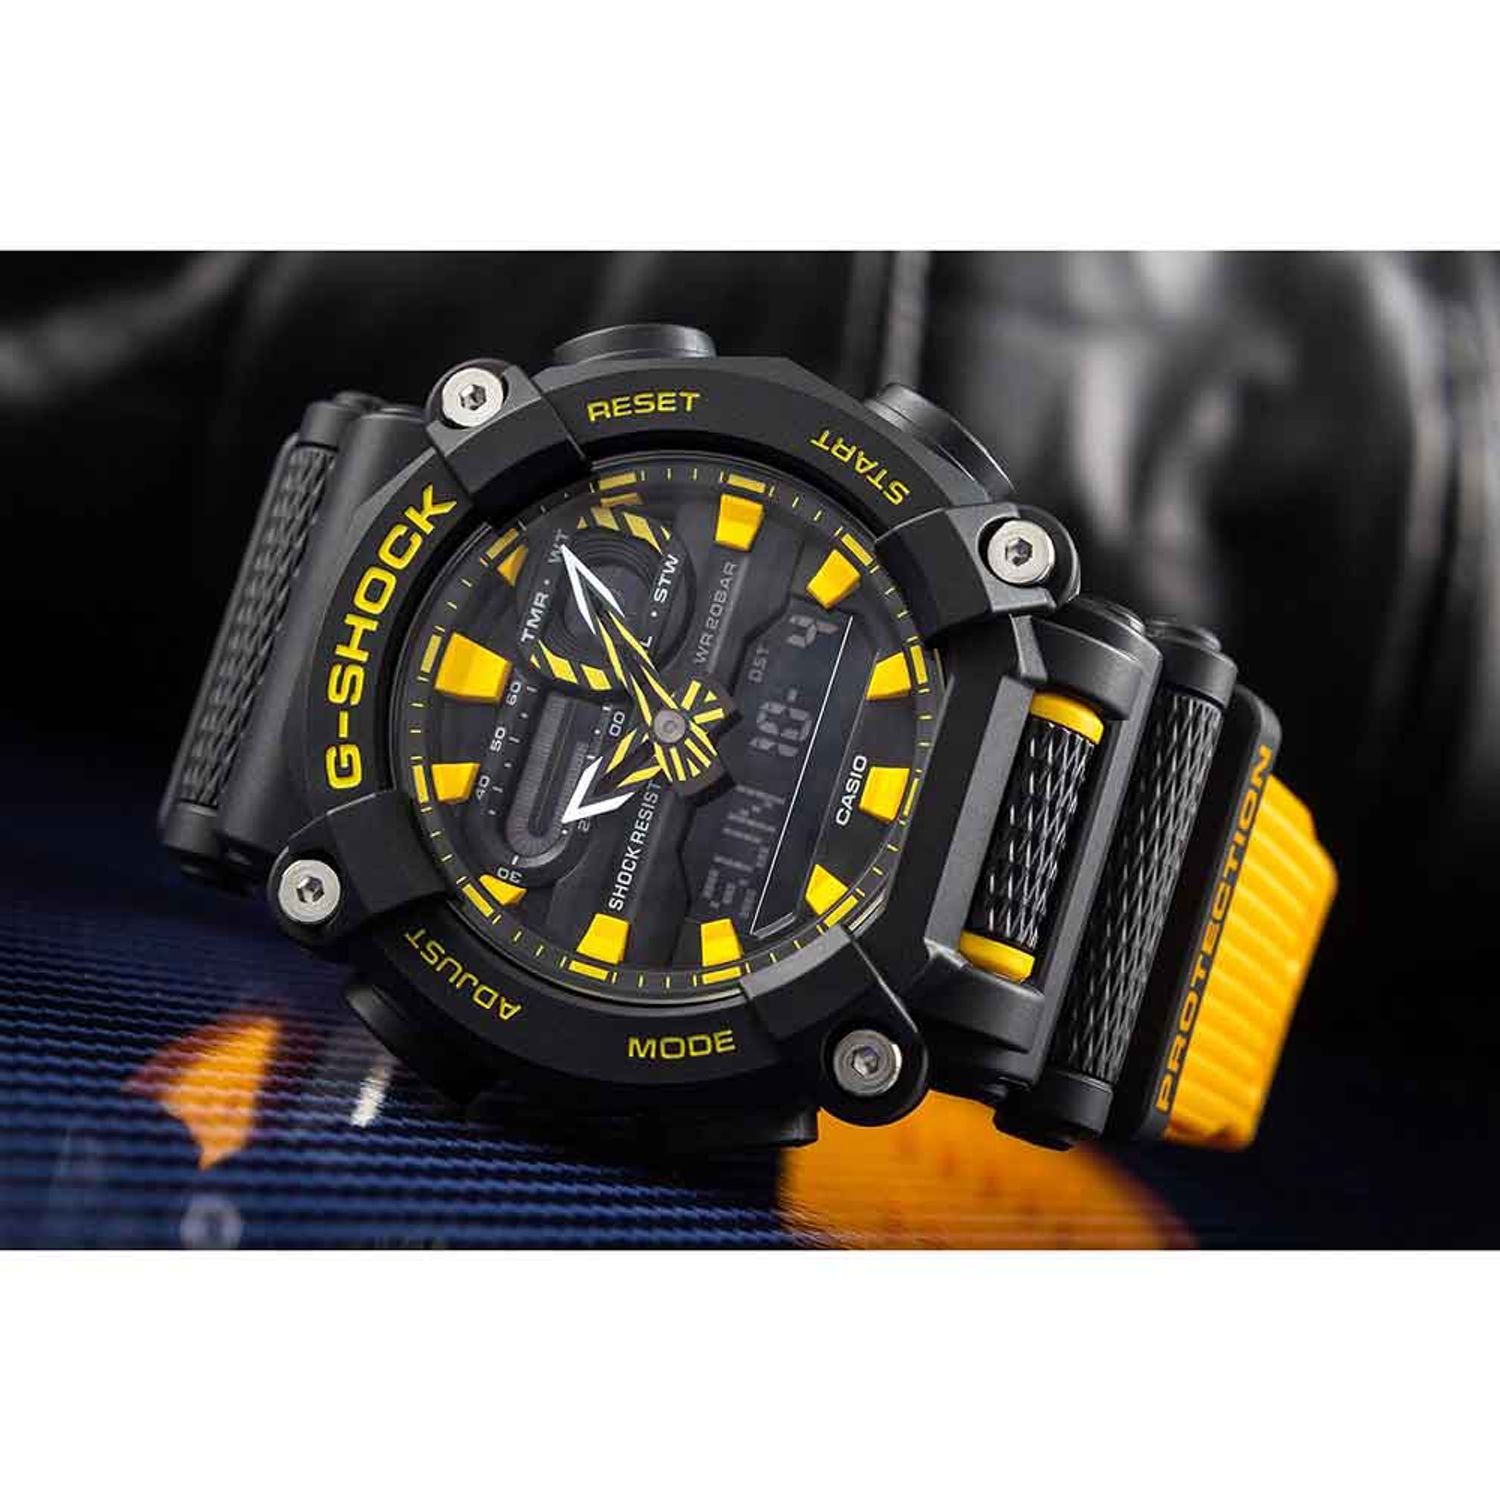 Compra Relojes G-Shock online • Entrega rápida •